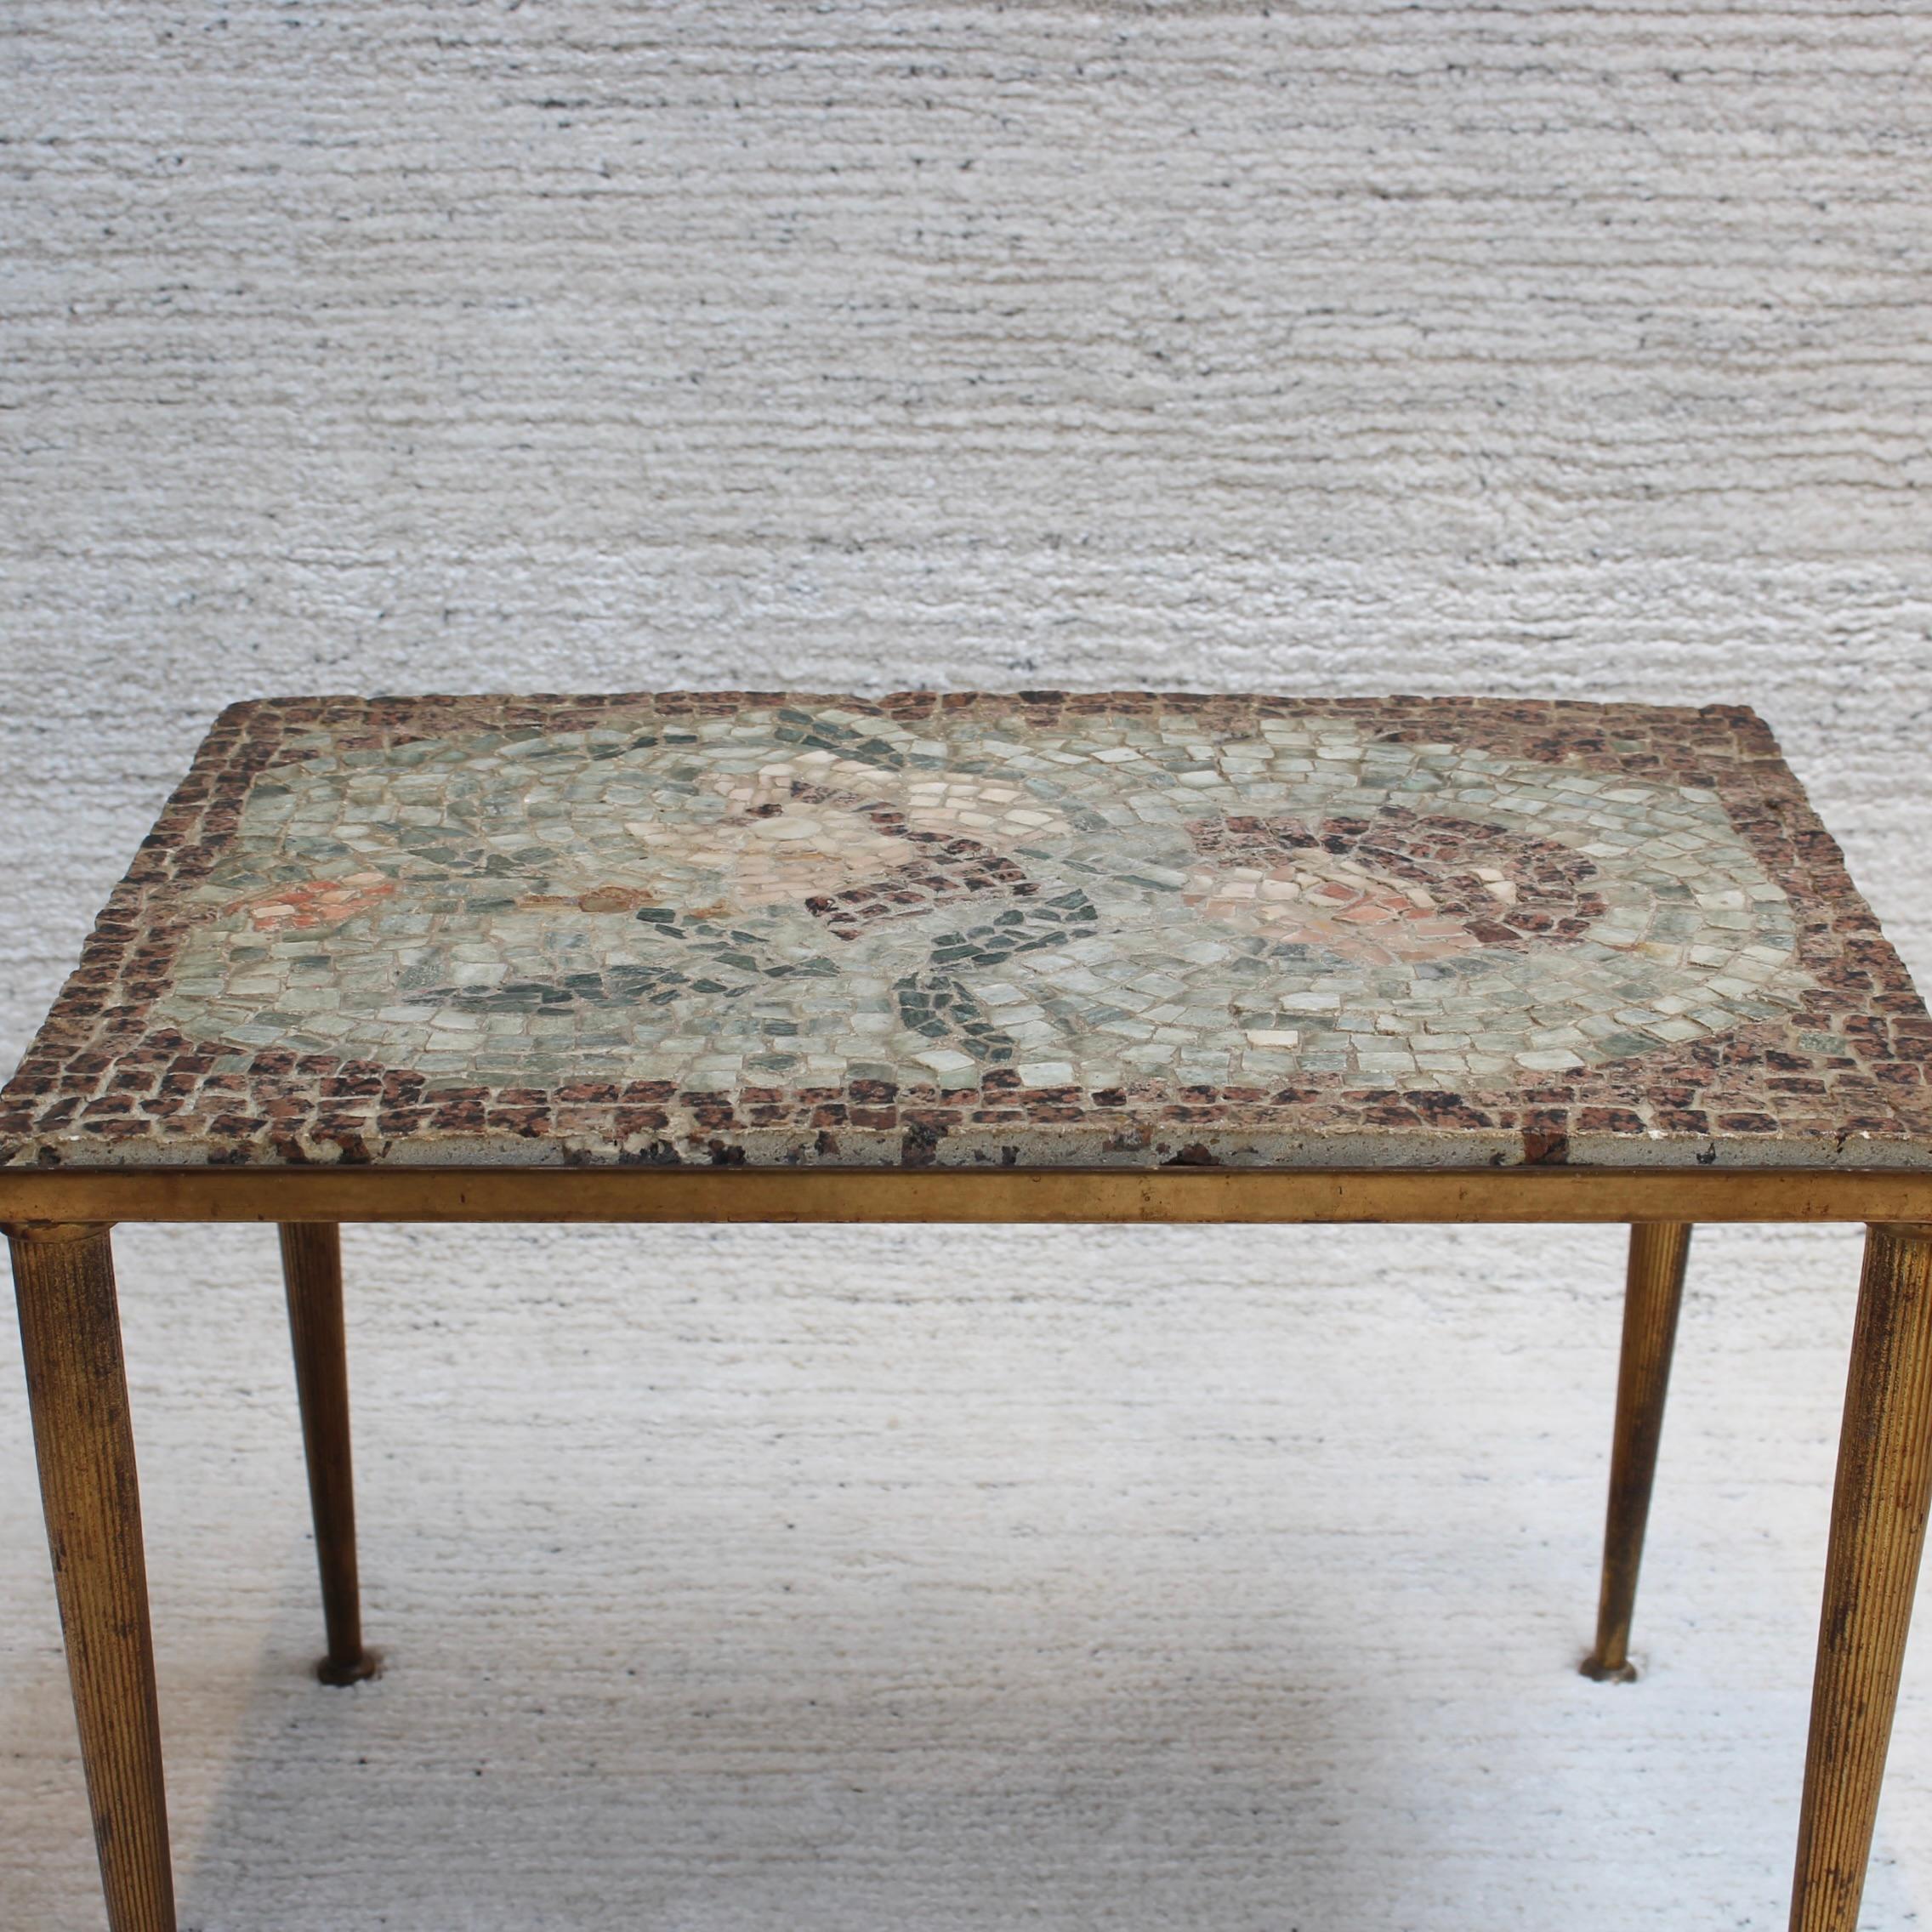 Tavolo basso vintage con piano a mosaico in stile italiano (circa anni '50). Scoperto nel sud della Francia, è un tavolino o tavolino da salotto deliziosamente accattivante con un piano a mosaico che ricorda quelli trovati nell'antica Roma o a